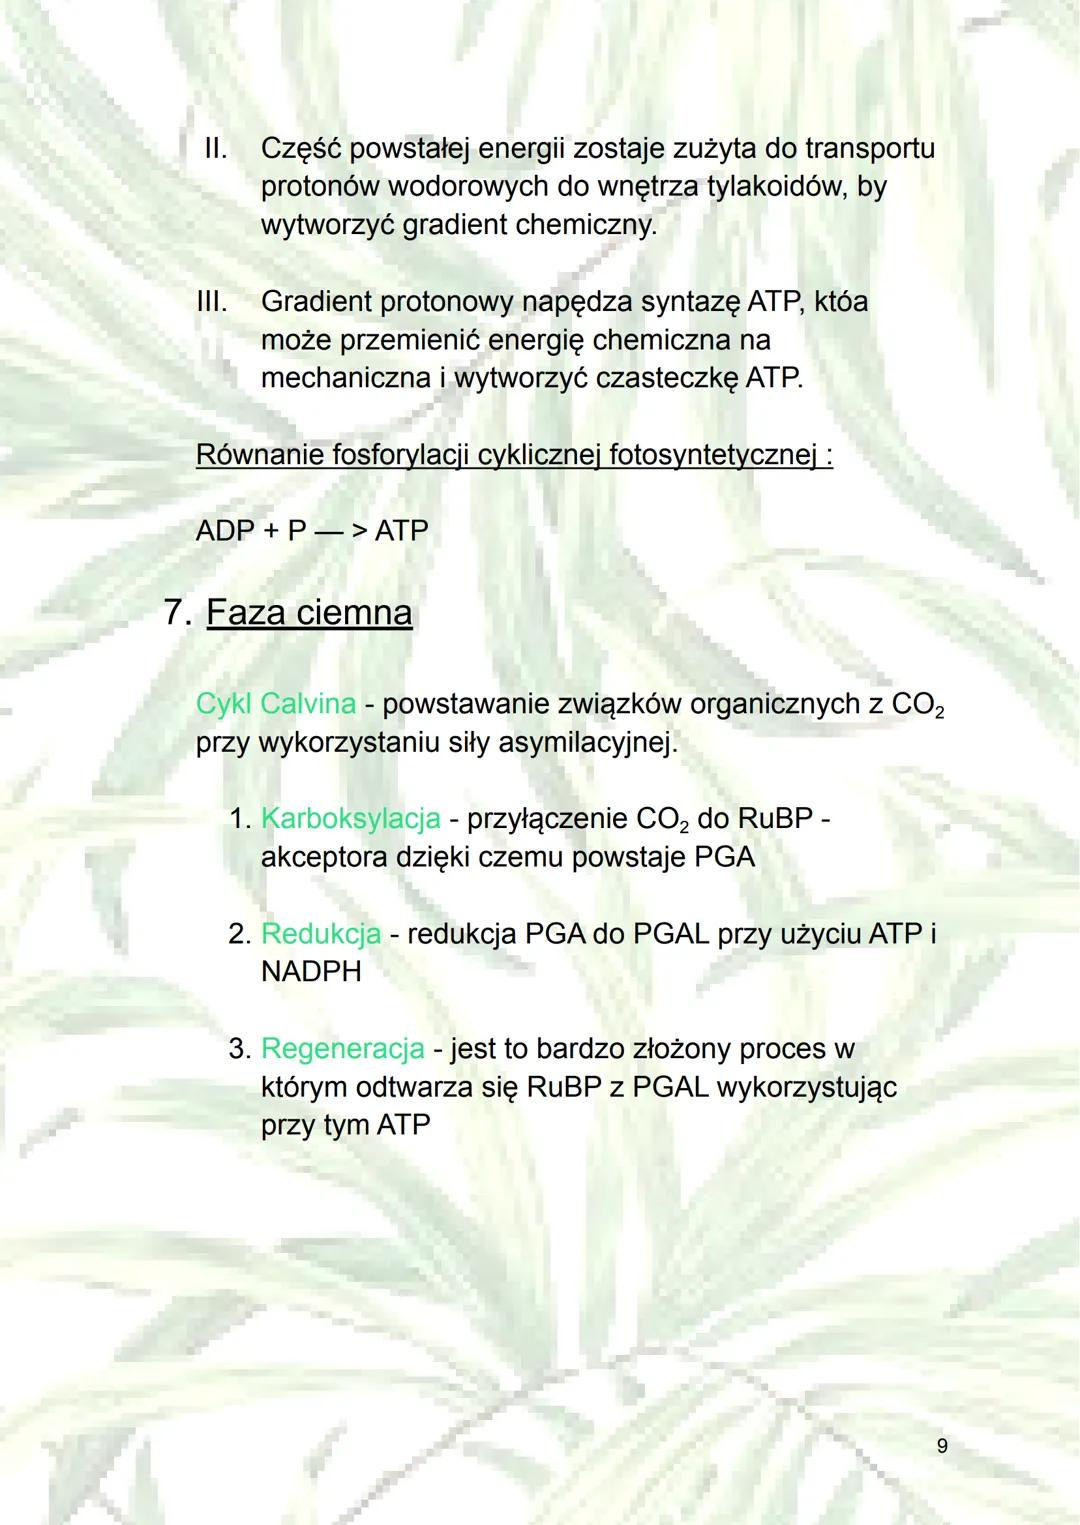 Fotosynteza
1. Autotrofizm - samodzielne wytwarzanie sobie
składników odżywczych (z związków
nieorganicznych do organicznych); rodzaj
odżywi